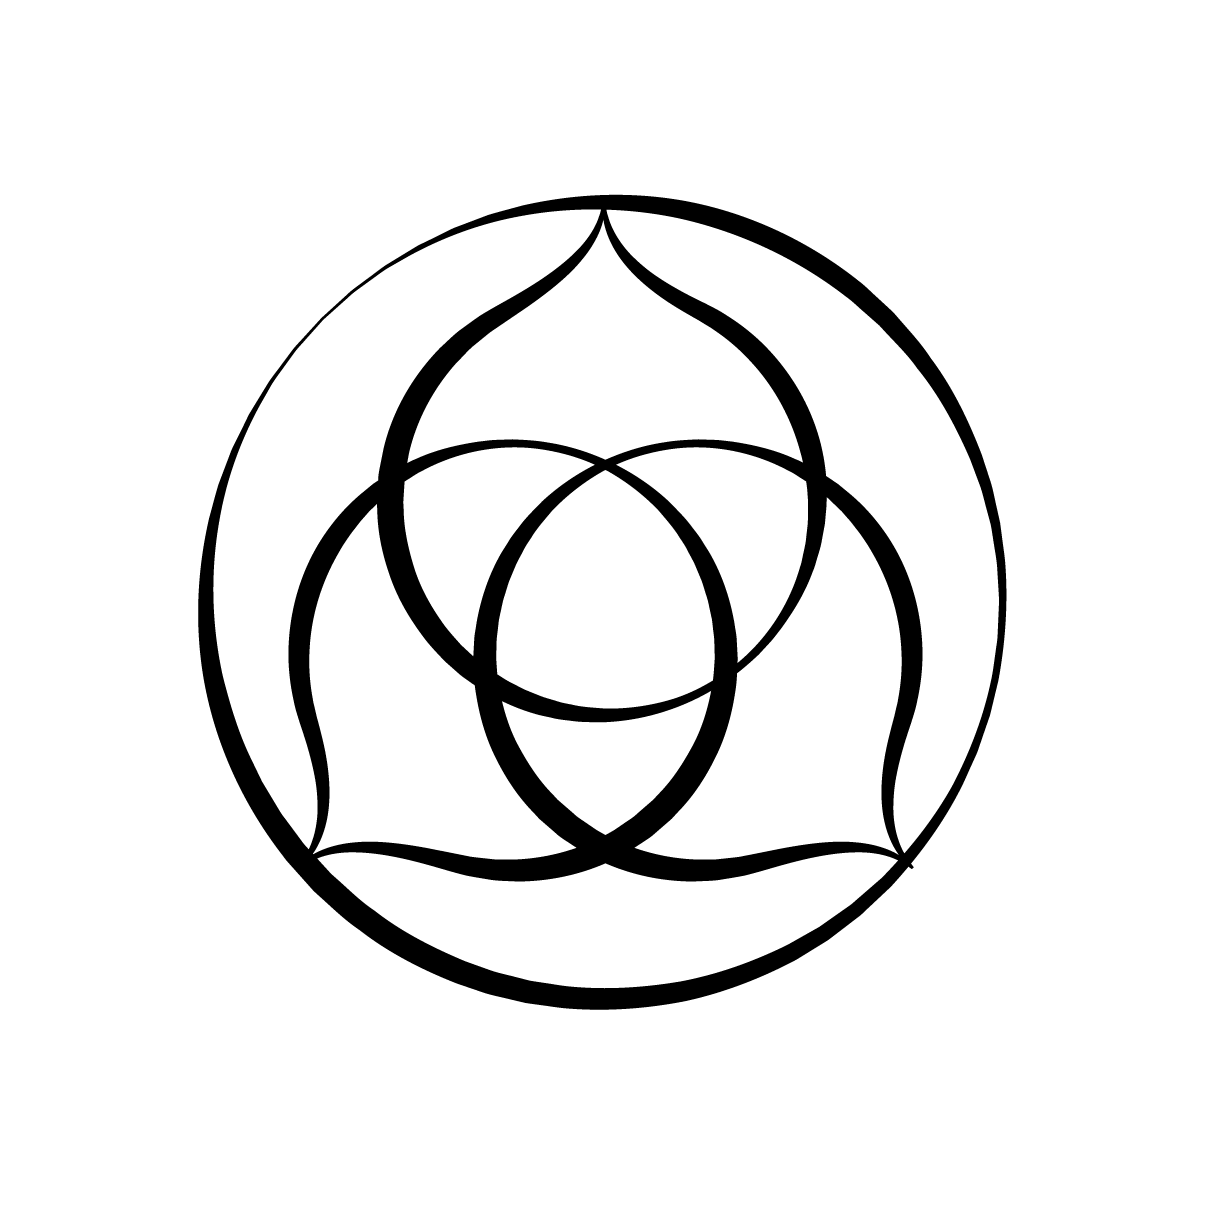 Italian Wedding Circle logo